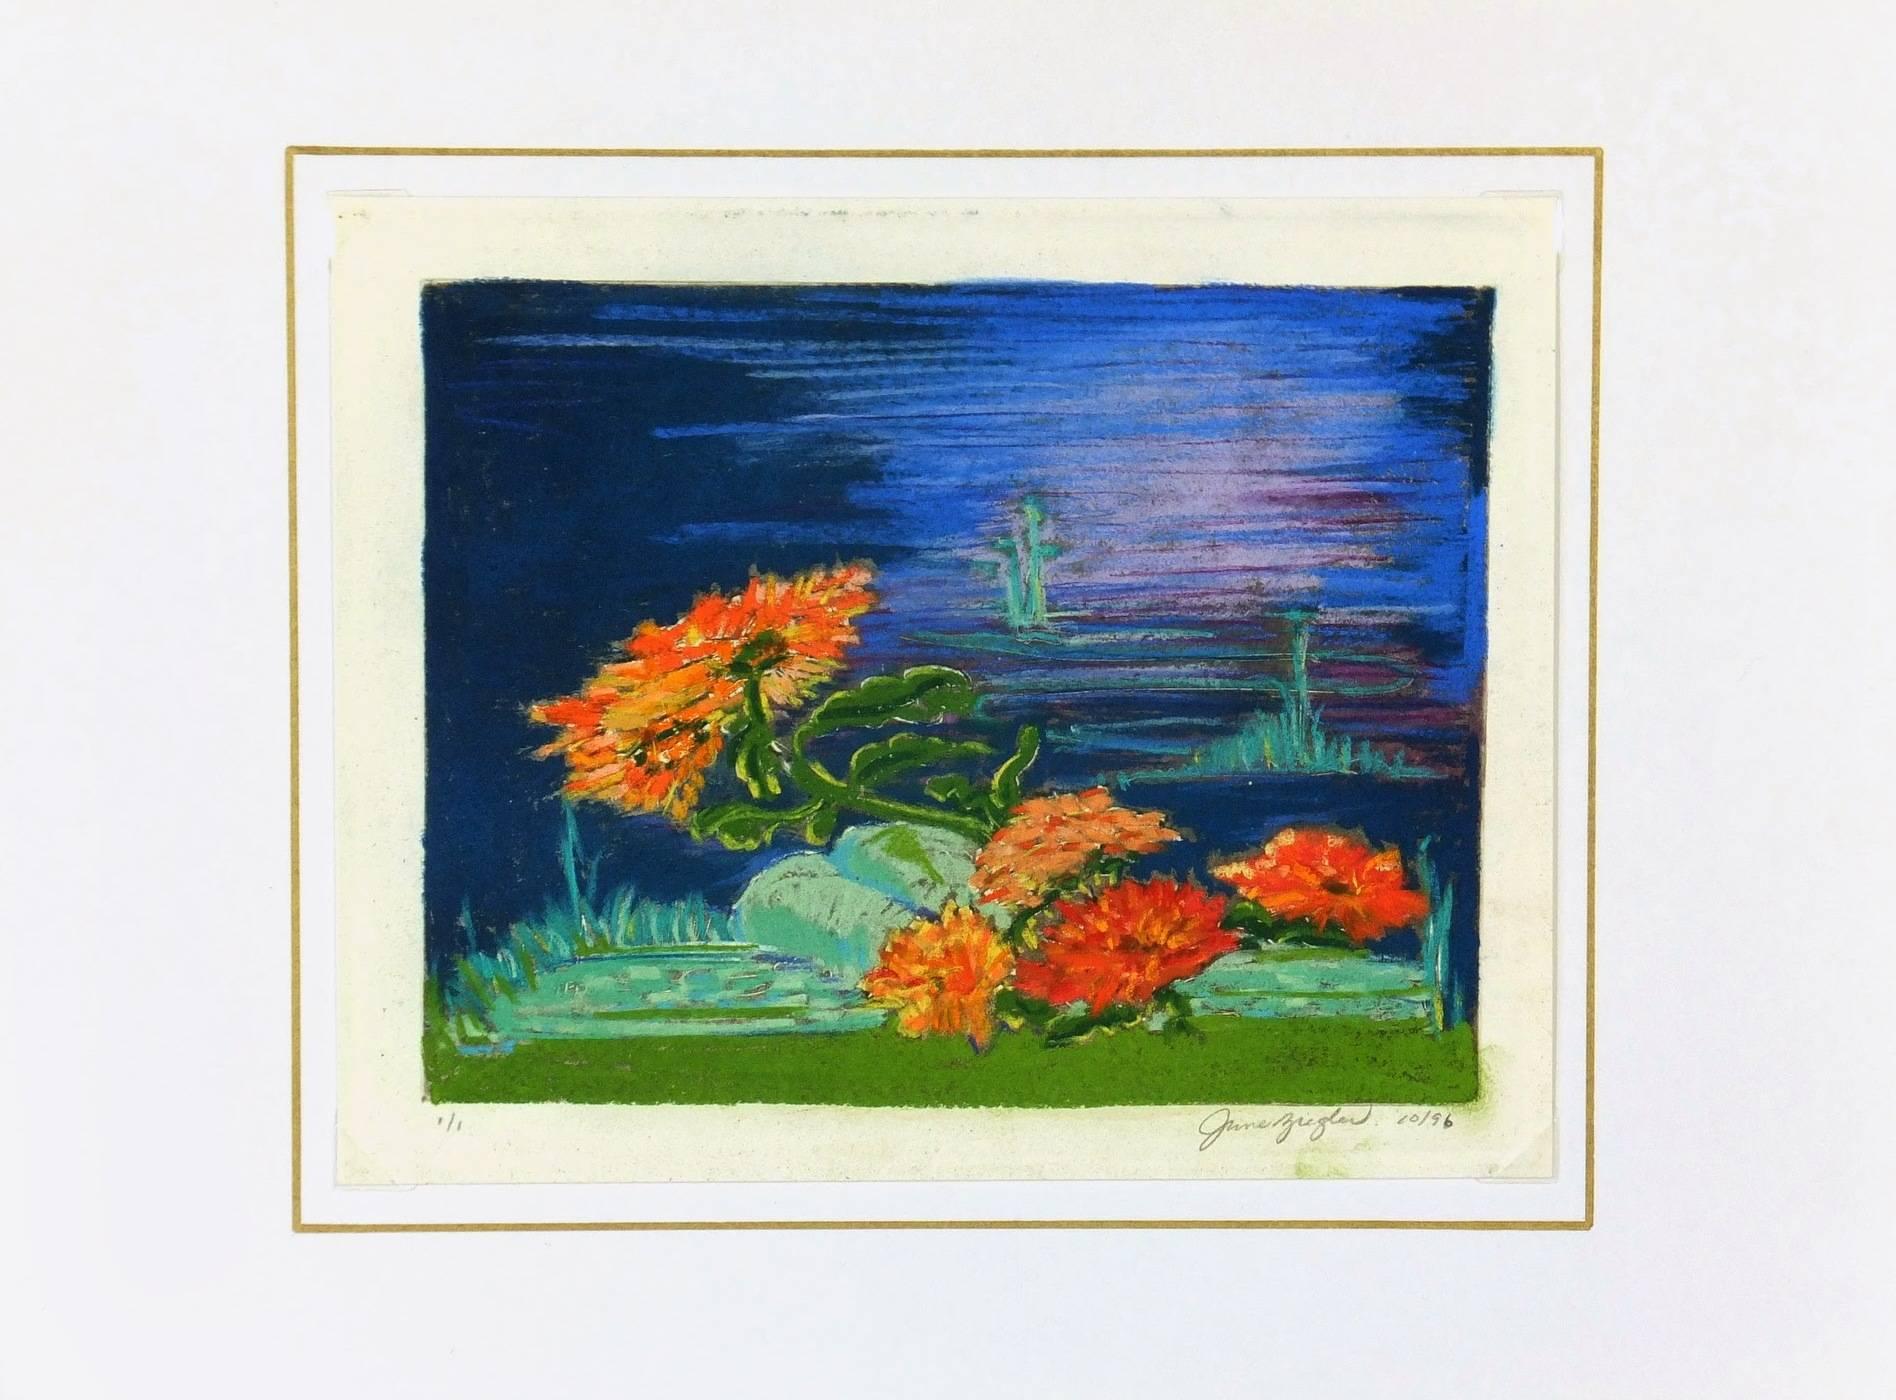 Pastell mit schillernden Farben (orangefarbene und rote Blumen, Grüntöne und verschiedene Blautöne im Hintergrund) von feurigen Blumen, die am Wasser blühen. Signiert 